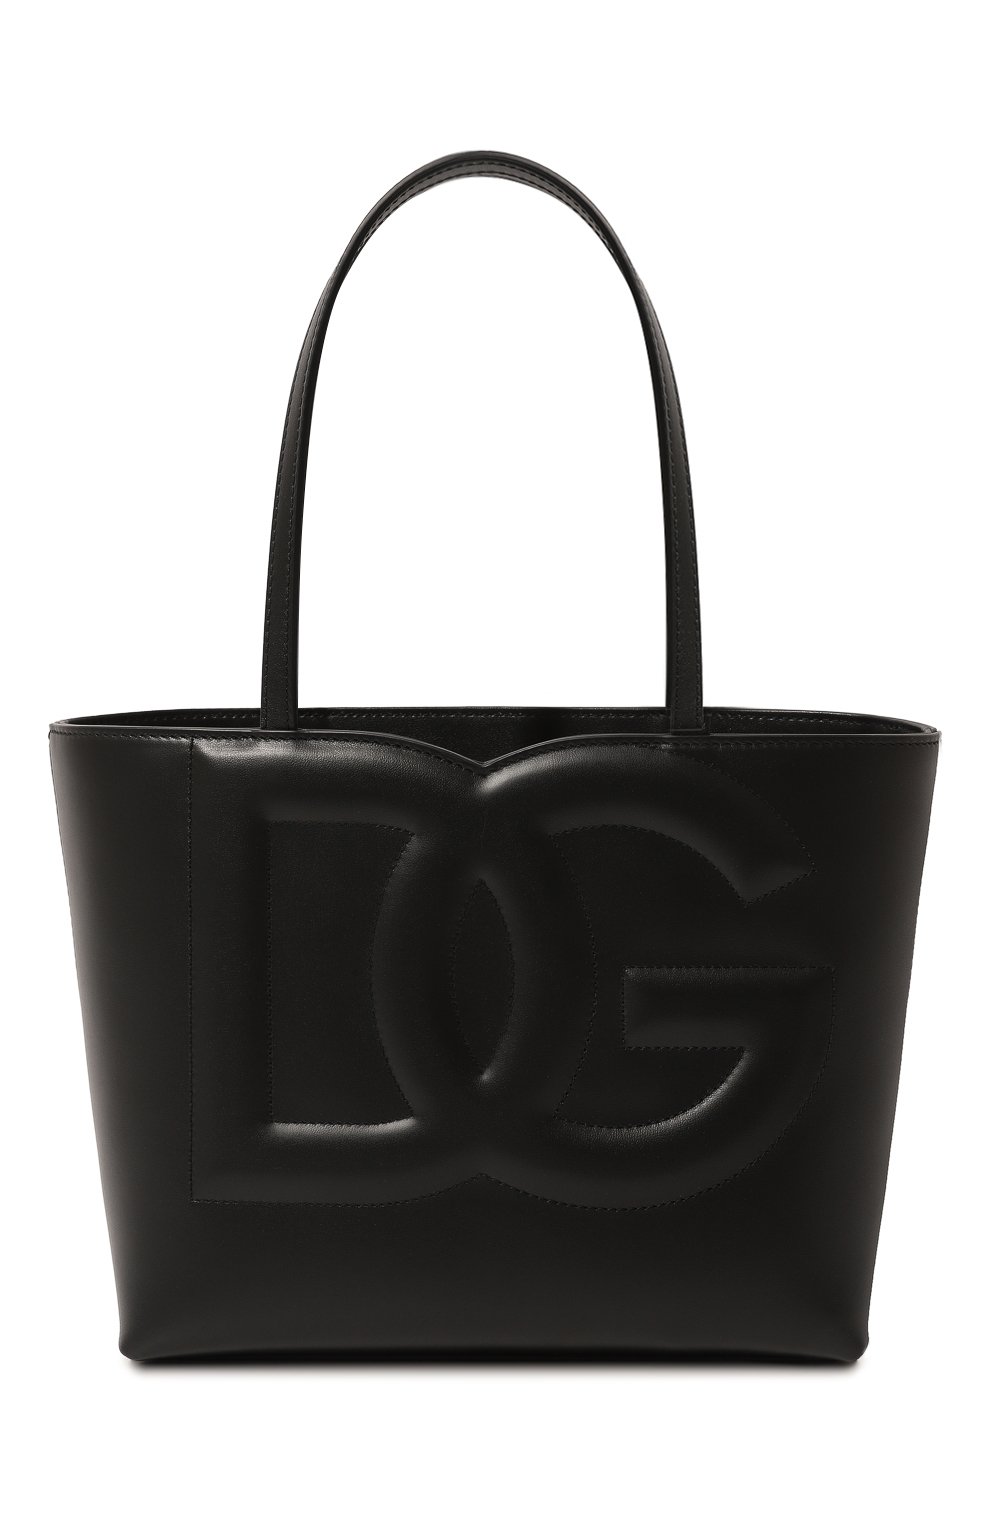 Шоперы Dolce & Gabbana, Сумка-тоут DG Logo medium Dolce & Gabbana, Италия, Чёрный, Кожа: 100%;, 12942411  - купить